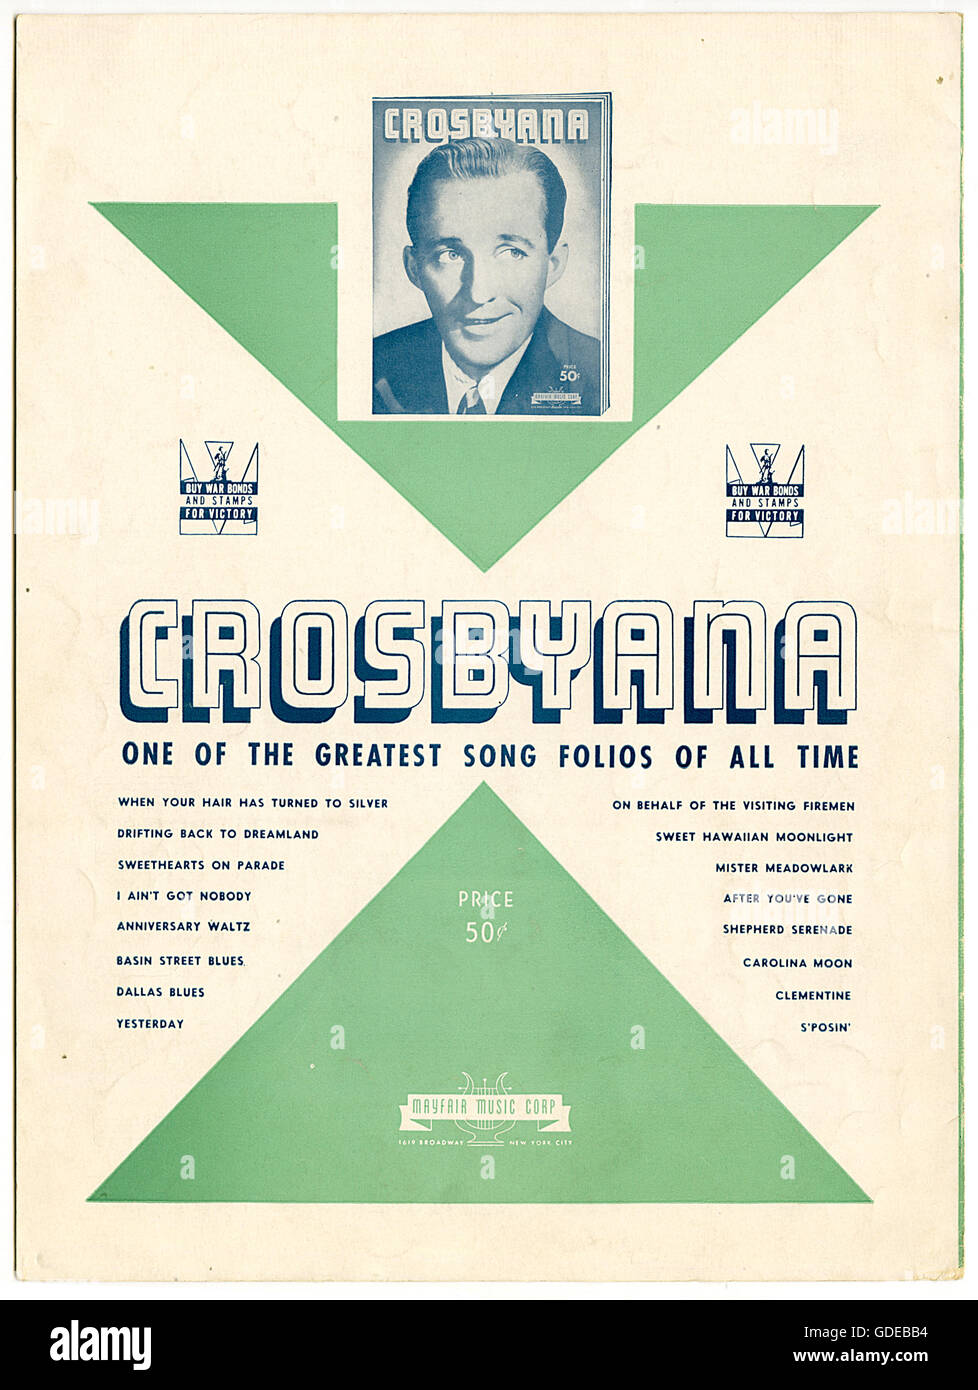 Publicité vintage pour la chanson "folio Crosbyana" avec Bing Crosby 1943 Banque D'Images